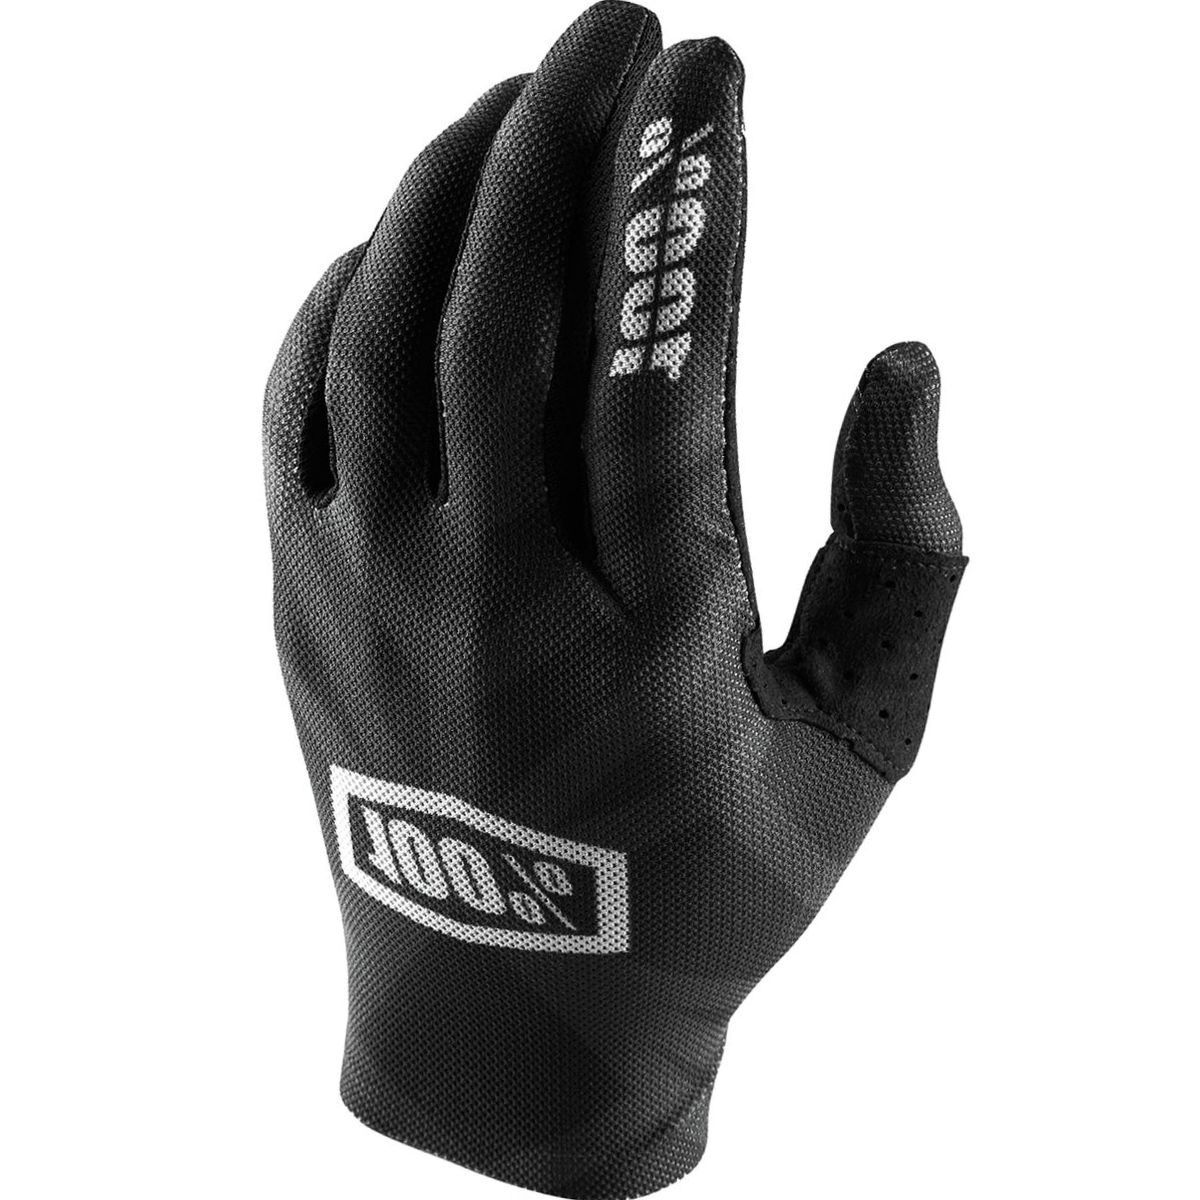 100% Celium II Glove - Men's